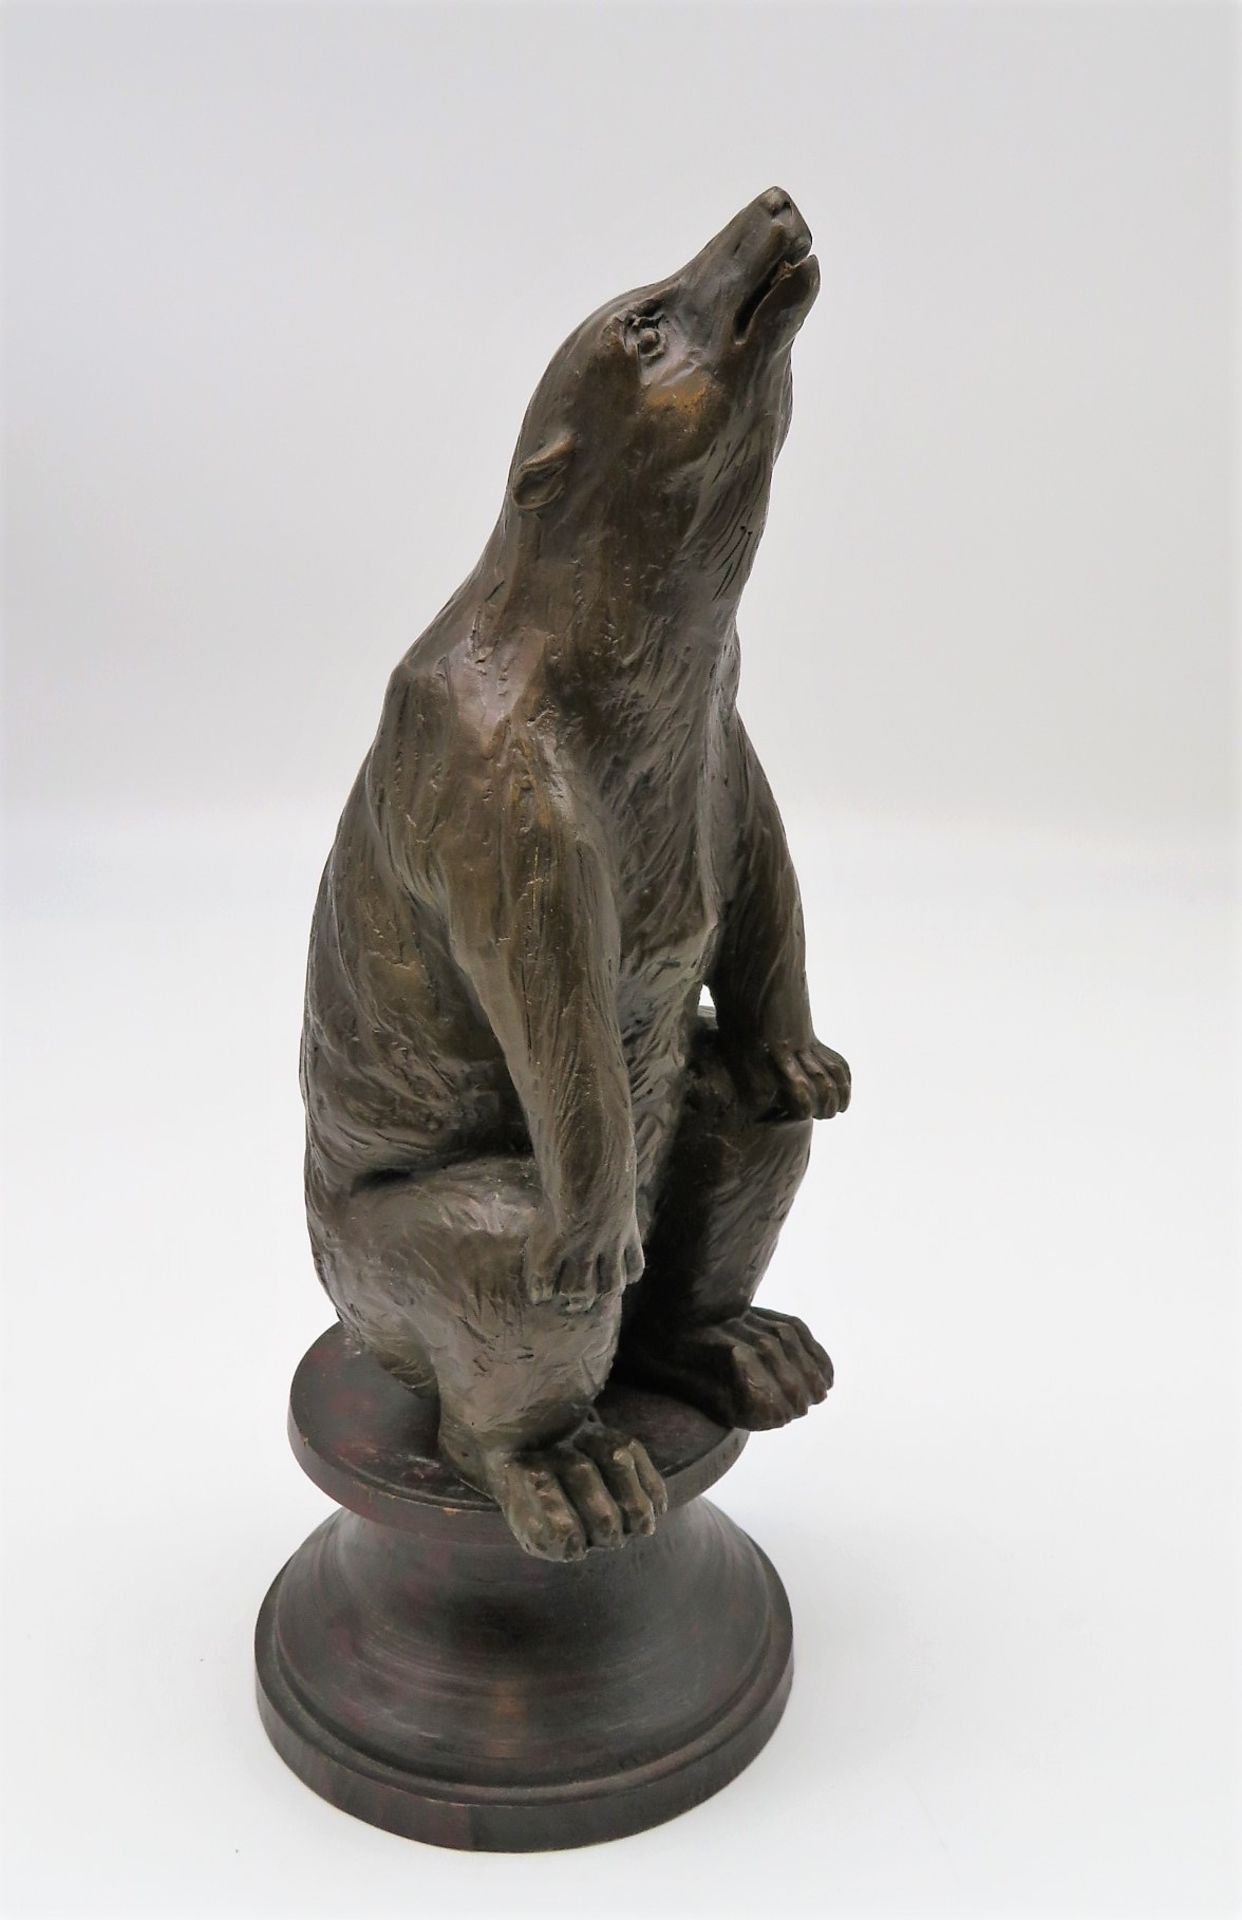 Unbekannter Bildhauer, Sich aufrichtender Bär, Bronze, Holzsockel, h 27,5 cm, d 8,5 cm.